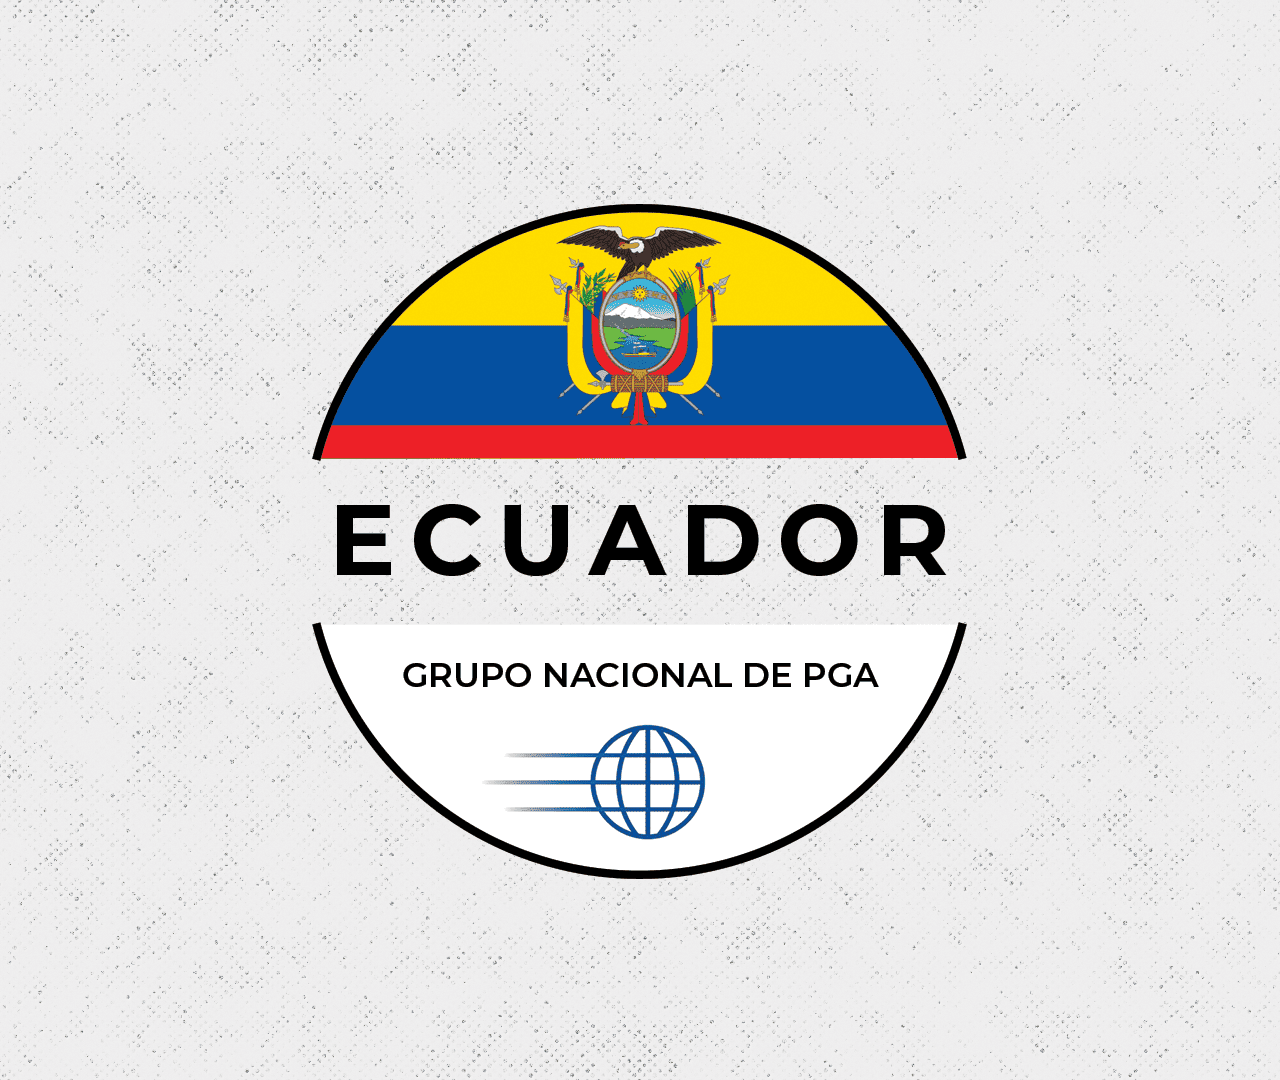 Ecuador Grupo Nacional de PGA